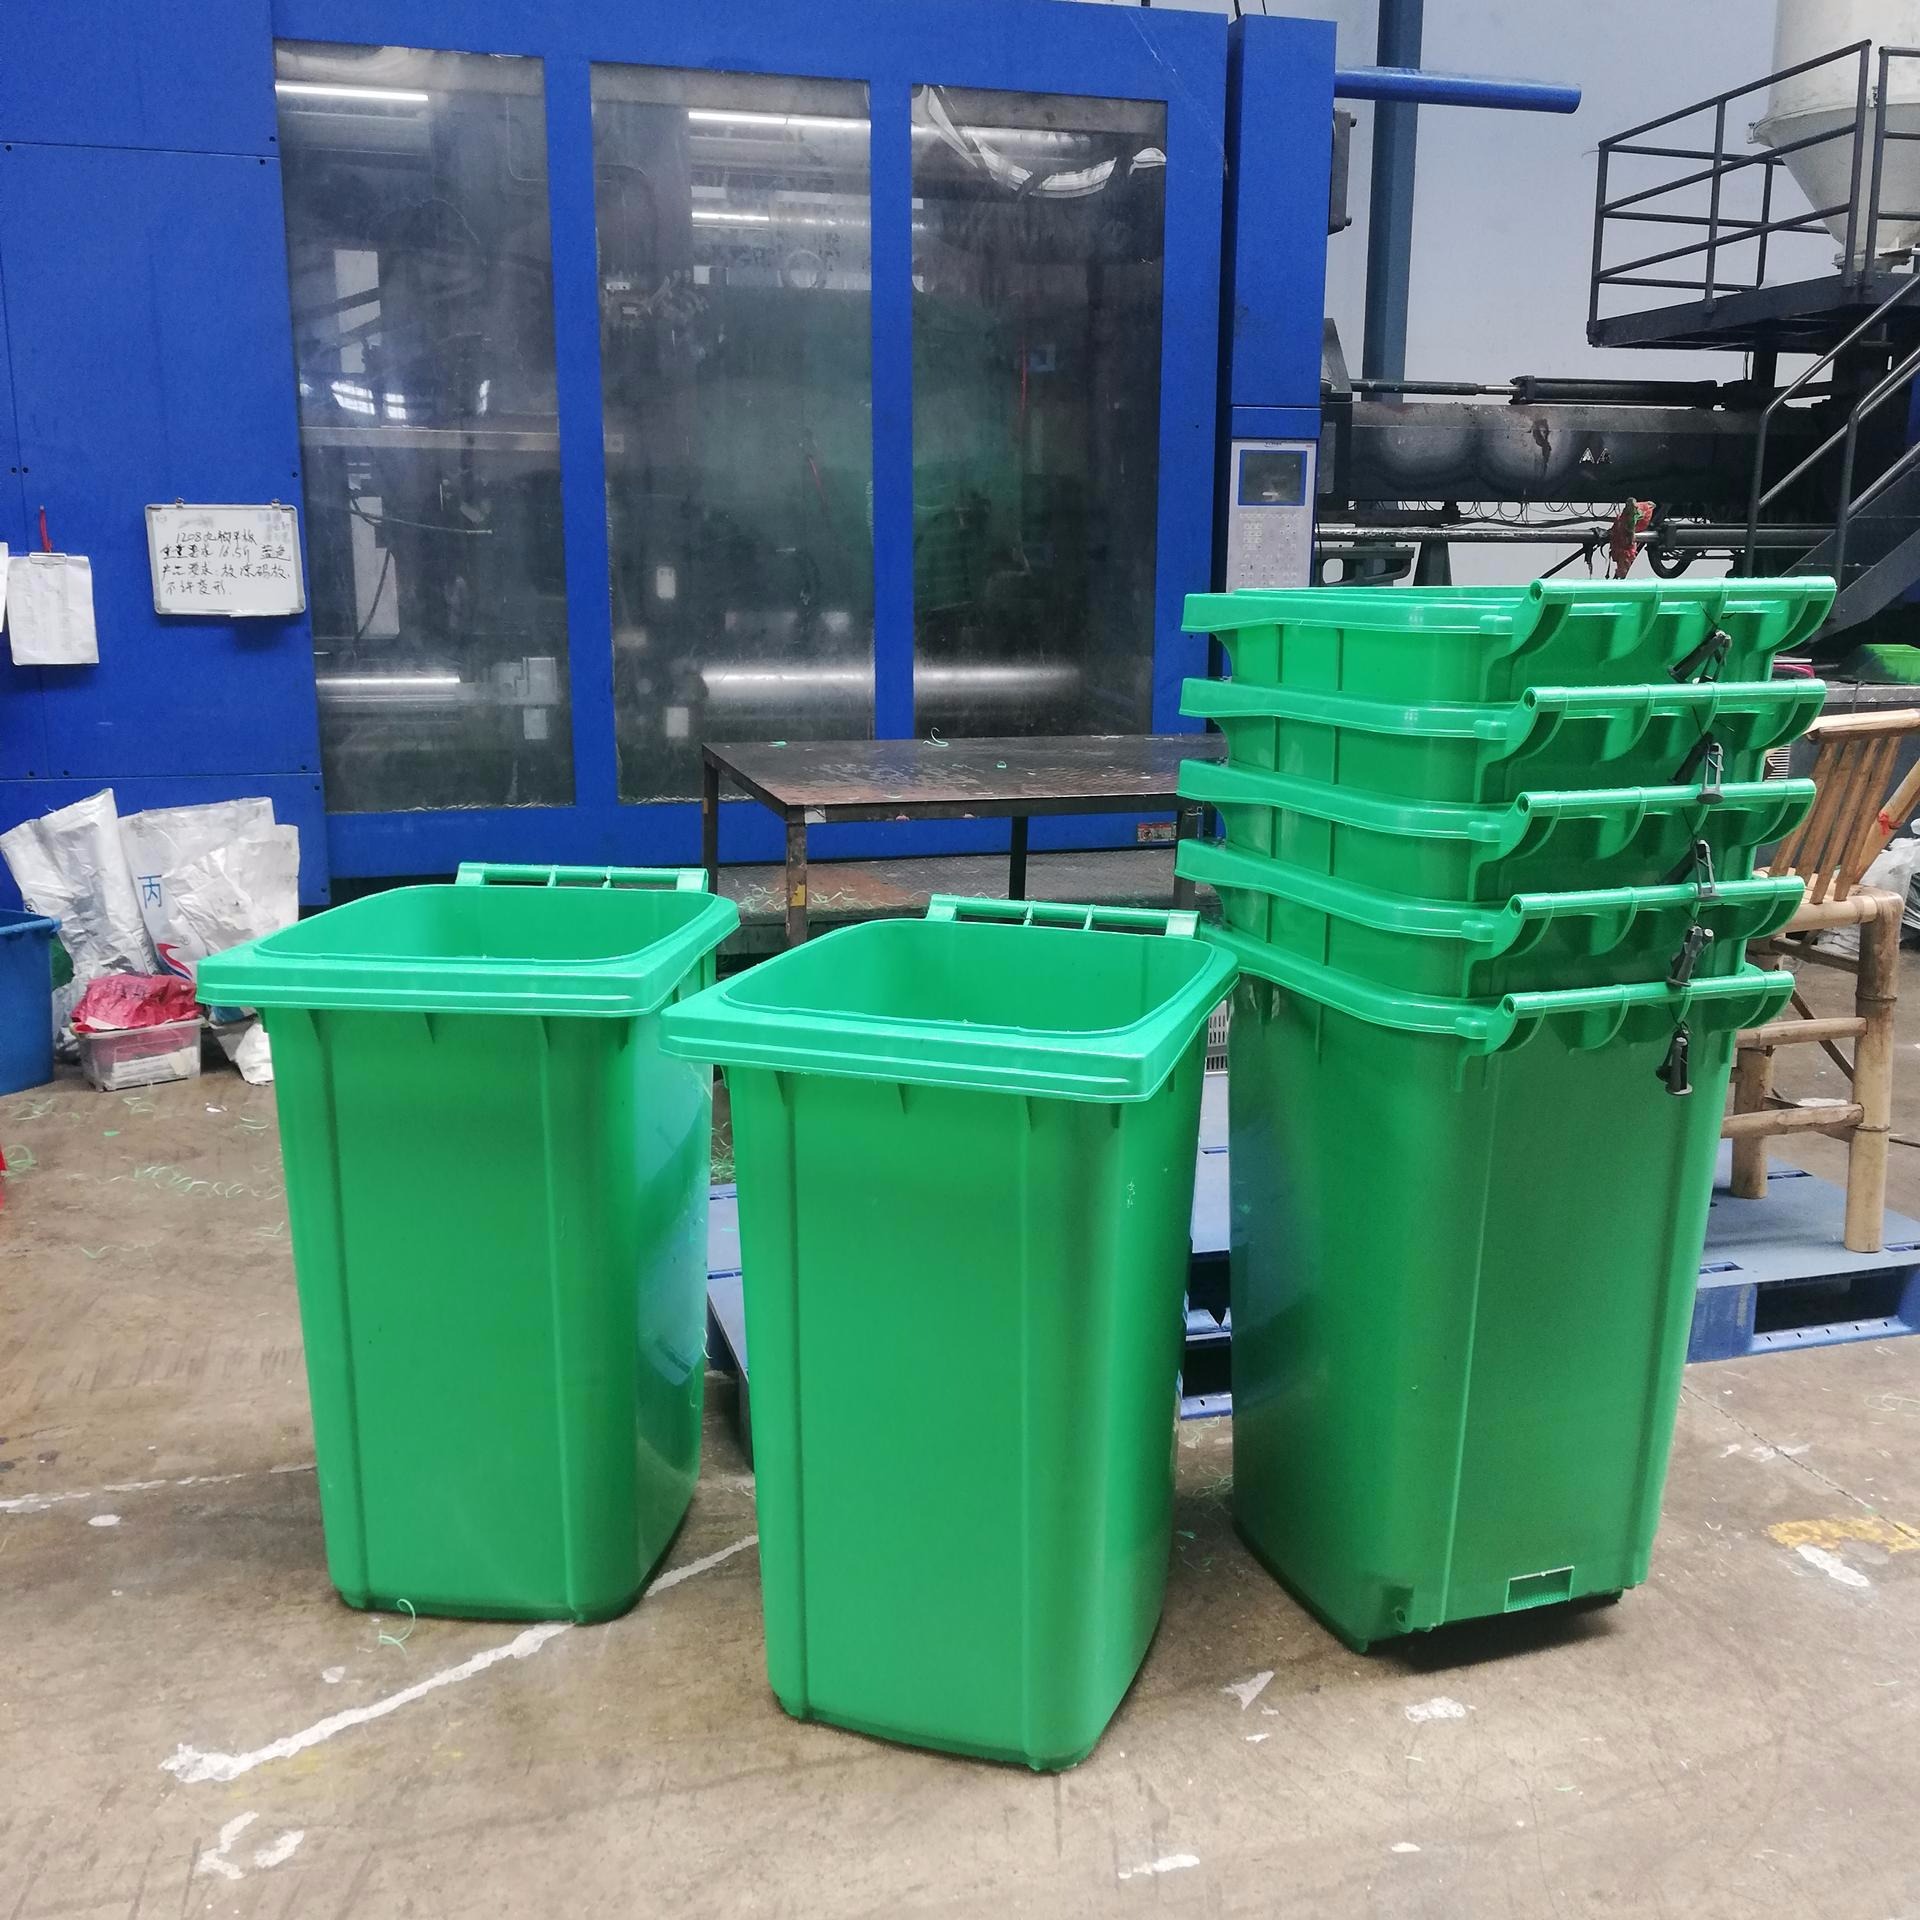 湖北益乐塑料垃圾桶批发价格湖北益乐塑料垃圾桶批发厂家